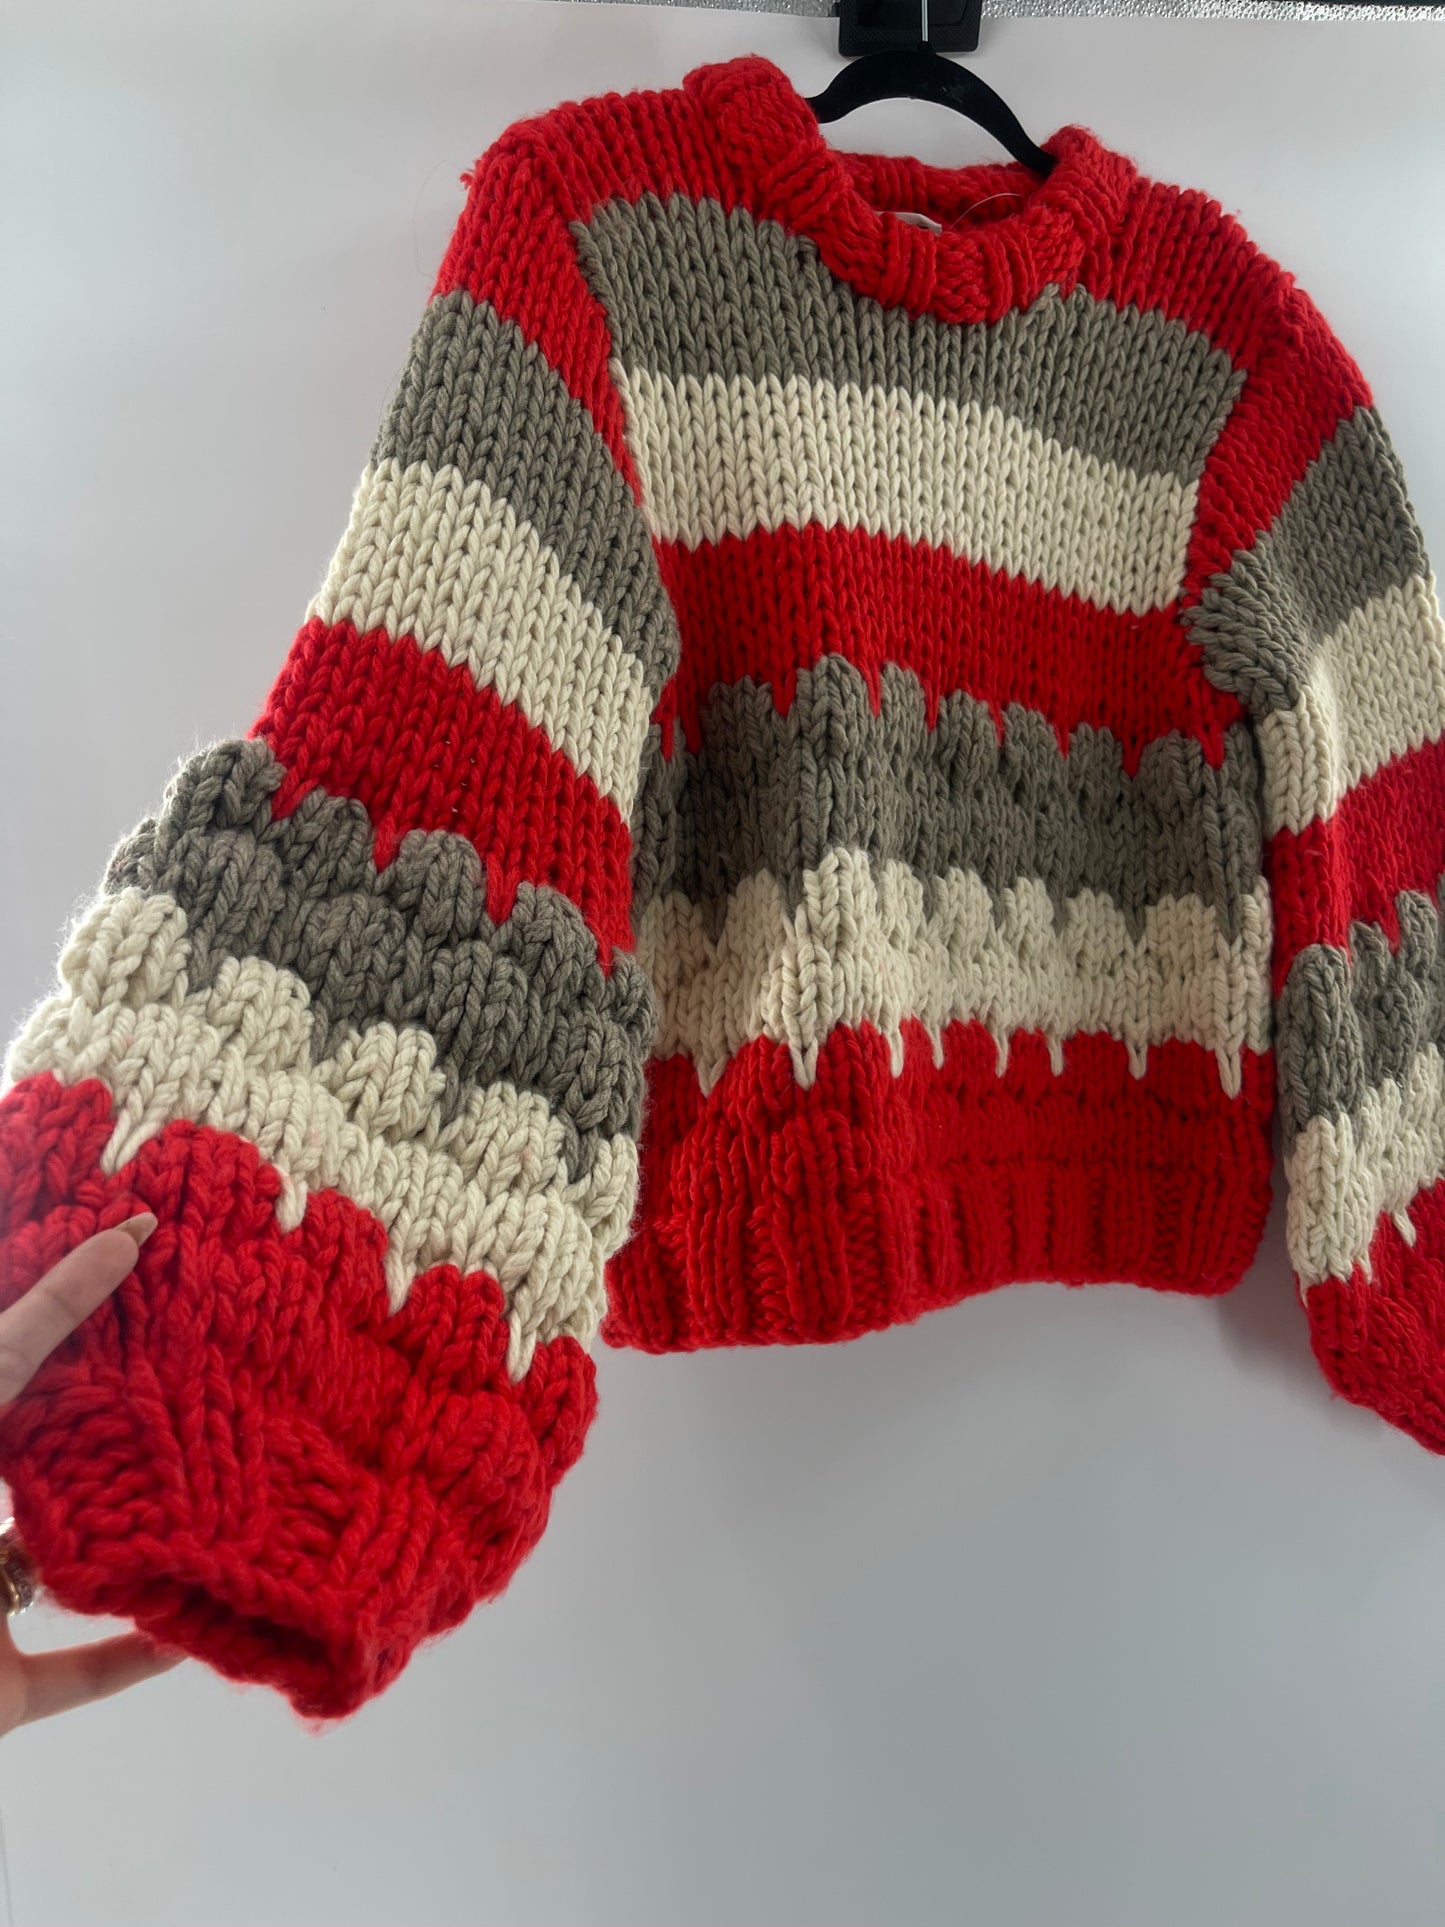 Urban Outfitters Heavy Duty Yarn Sweater (XS/S)